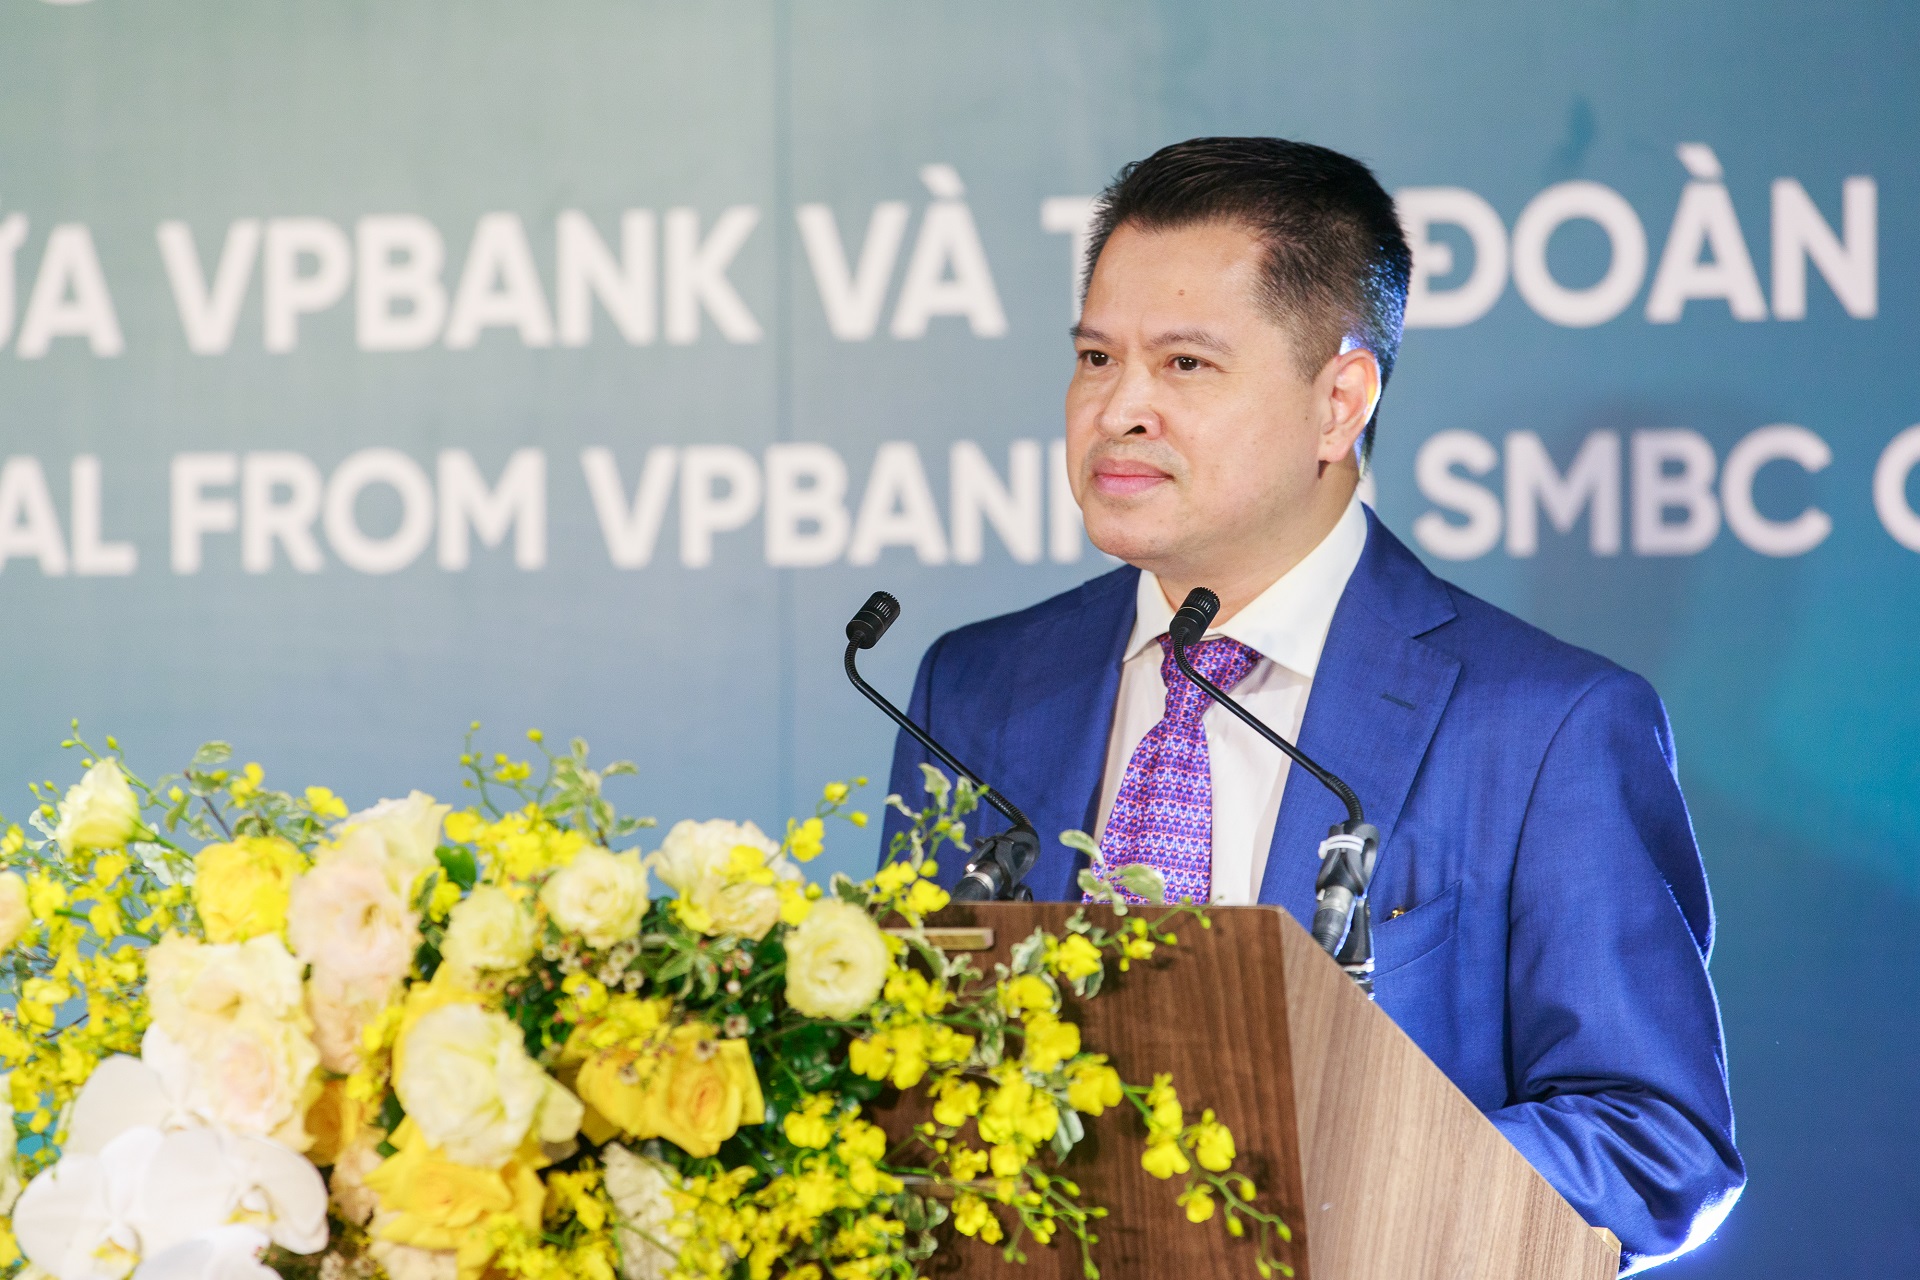 VPBank hoàn tất thỏa thuận bán 49% vốn điều lệ tại FE Credit cho SMBC Group